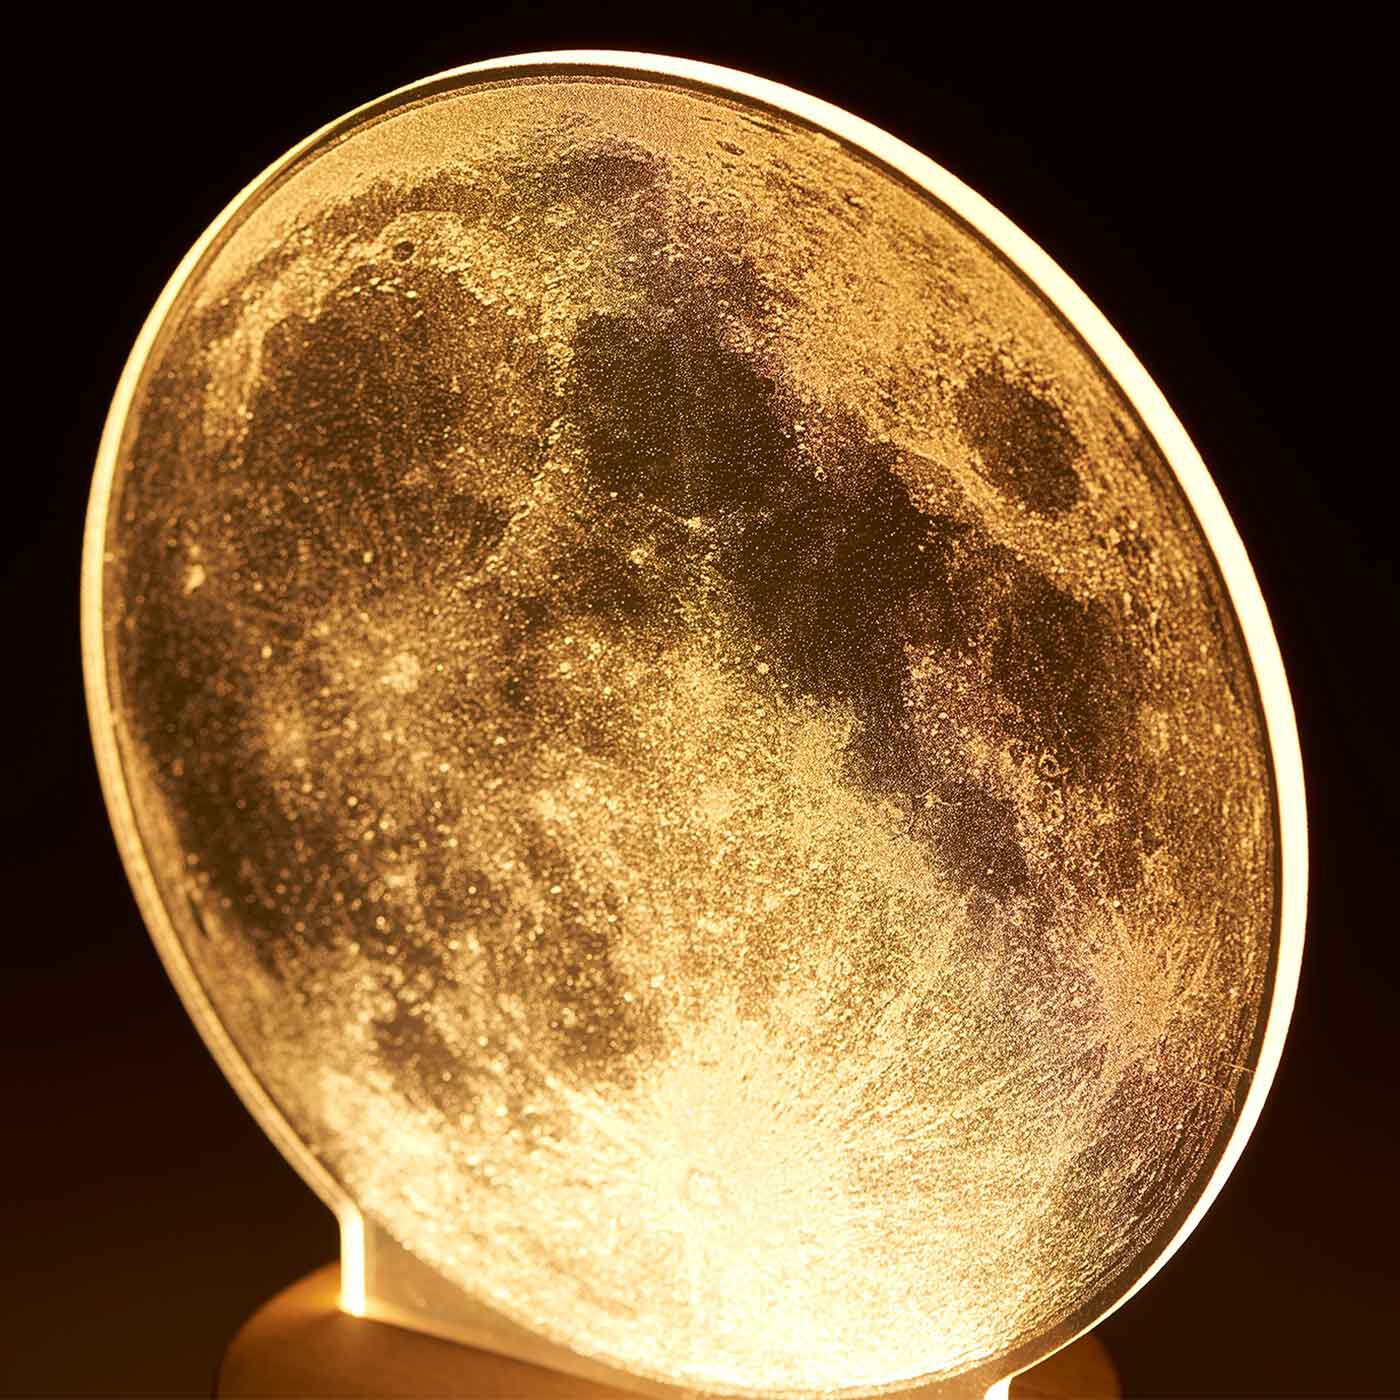 SeeMONO|月がお部屋をやさしく照らすＬＥＤライト|アクリル板に月の表面感をリアルに再現した繊細なタッチが、優しい光を演出します。